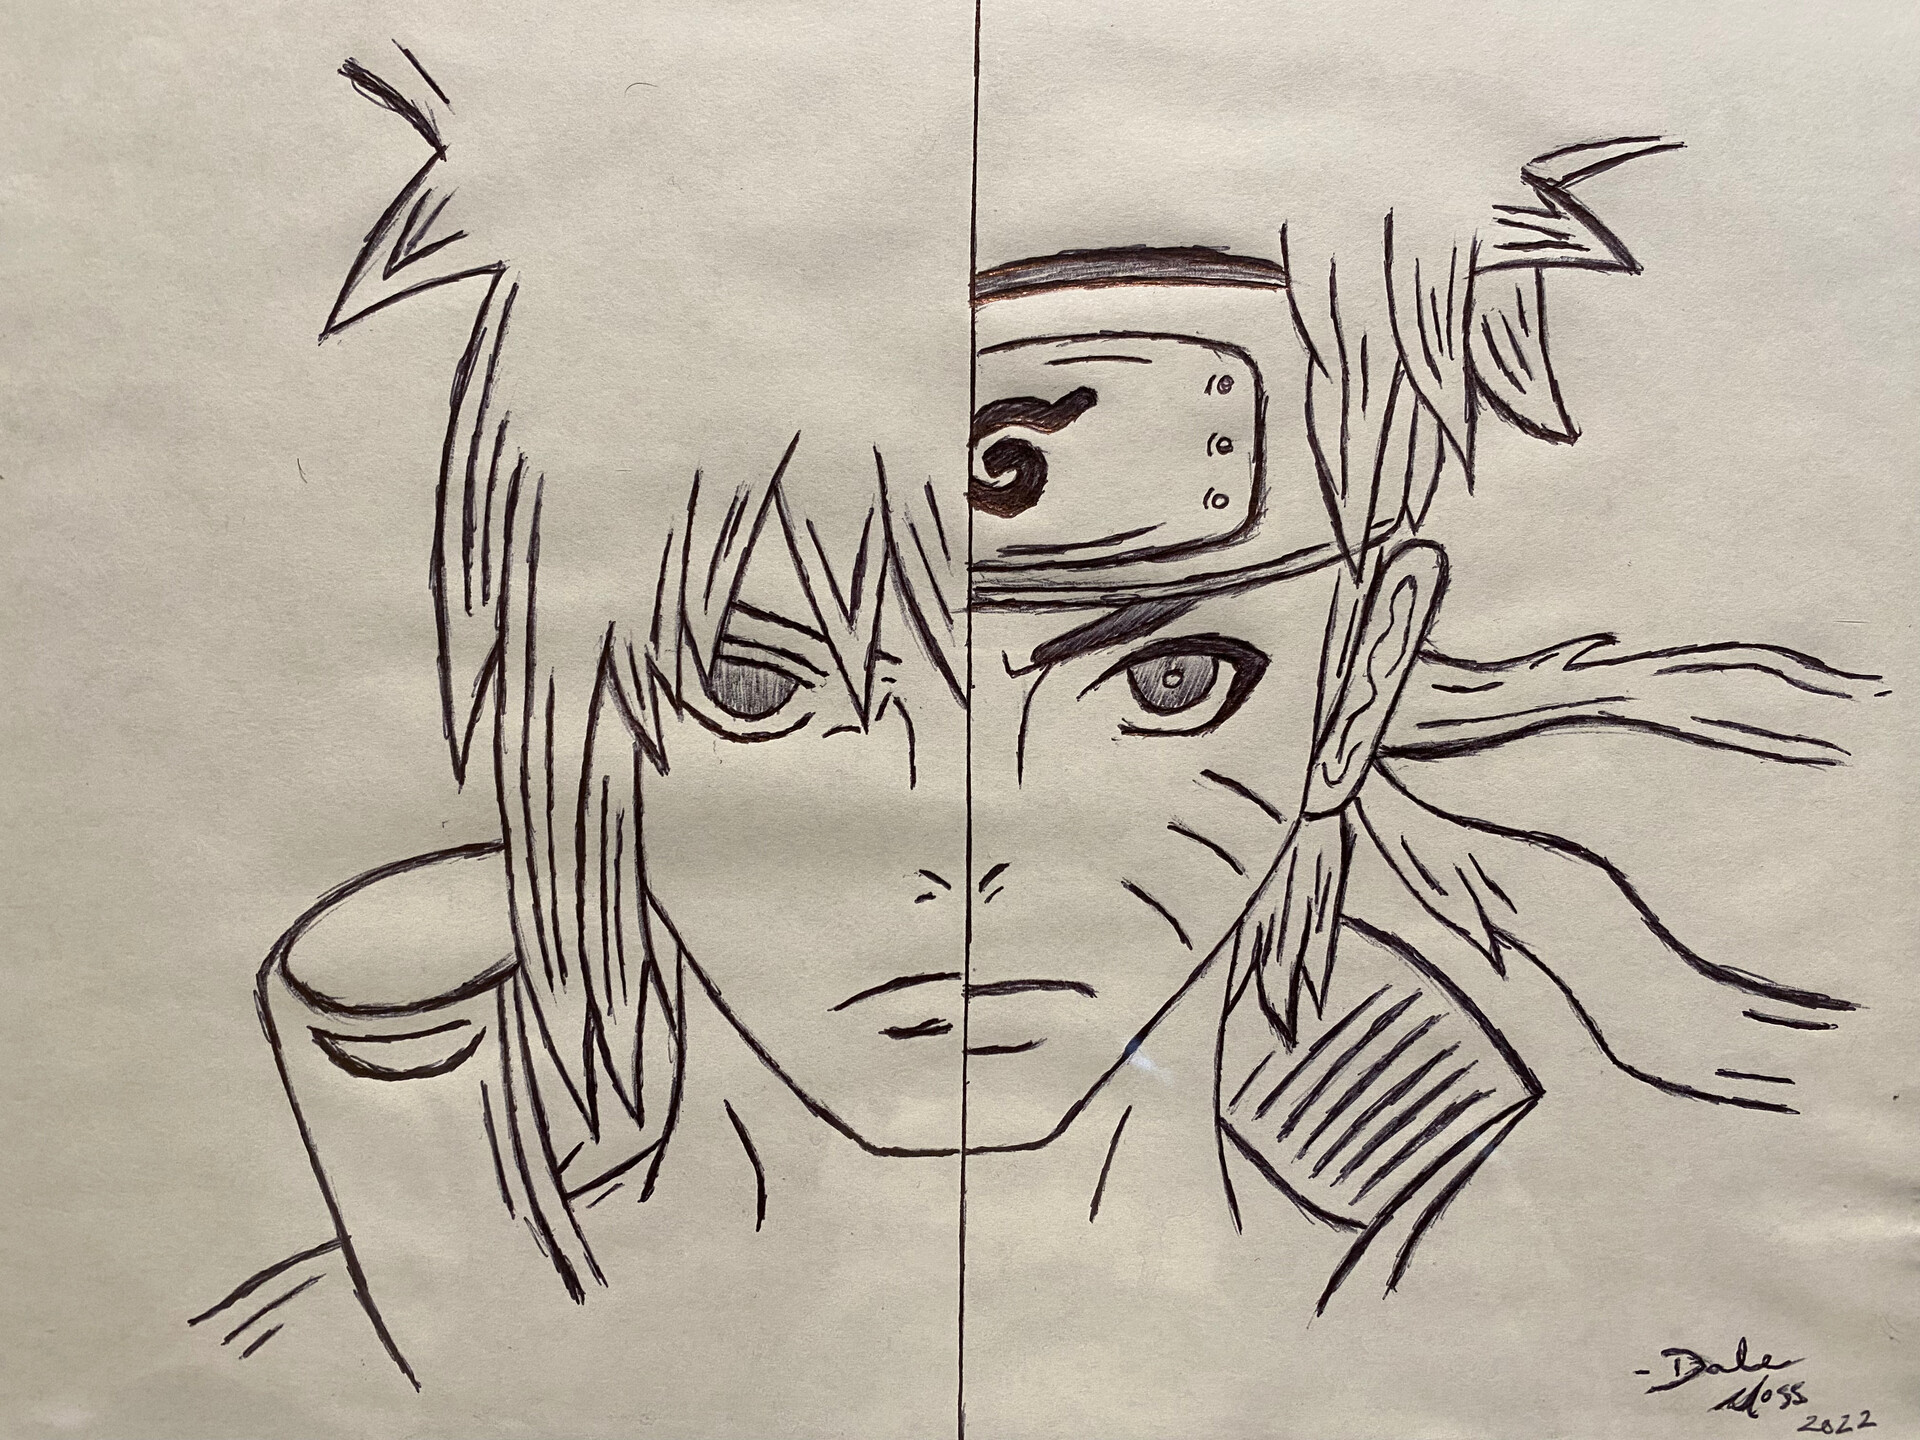 Naruto and sasuke from naruto - Anime arts - Drawings & Illustration,  People & Figures, Animation, Anime, & Comics, Anime - ArtPal